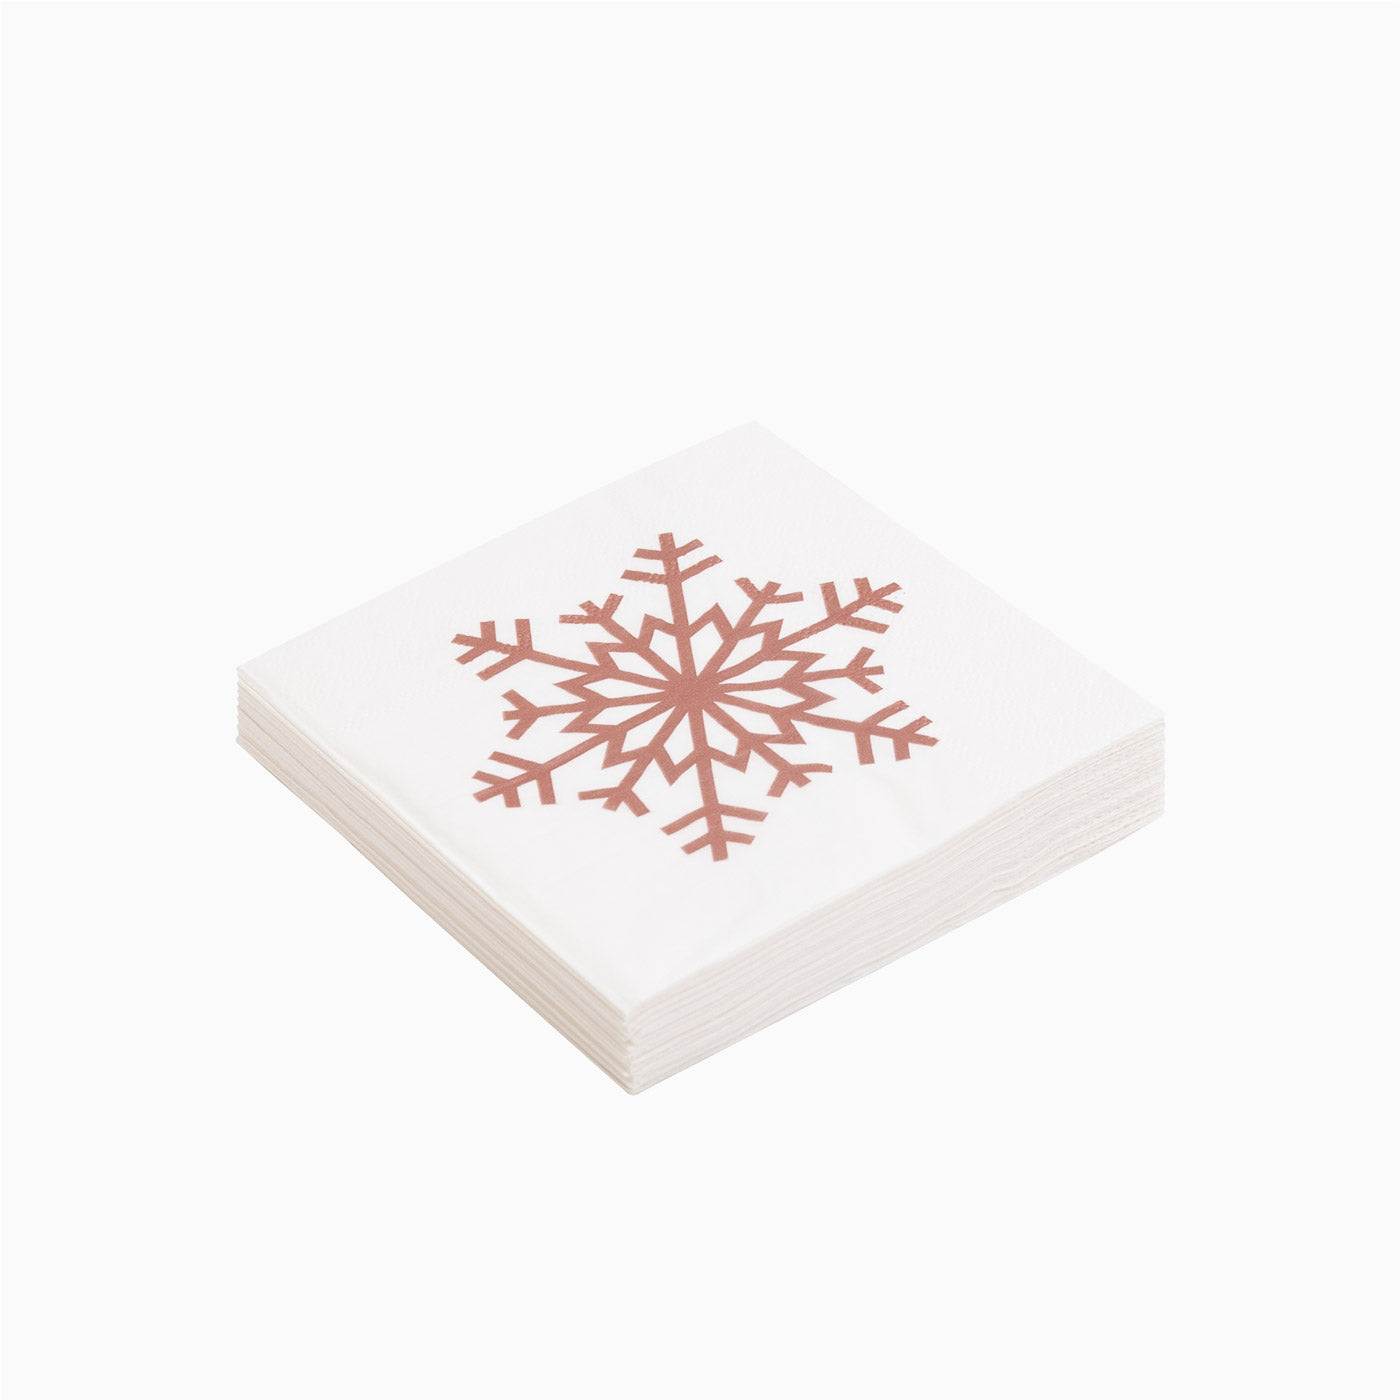 25x25 cm serviettes en papier de Noël flocon de snowflake rose or